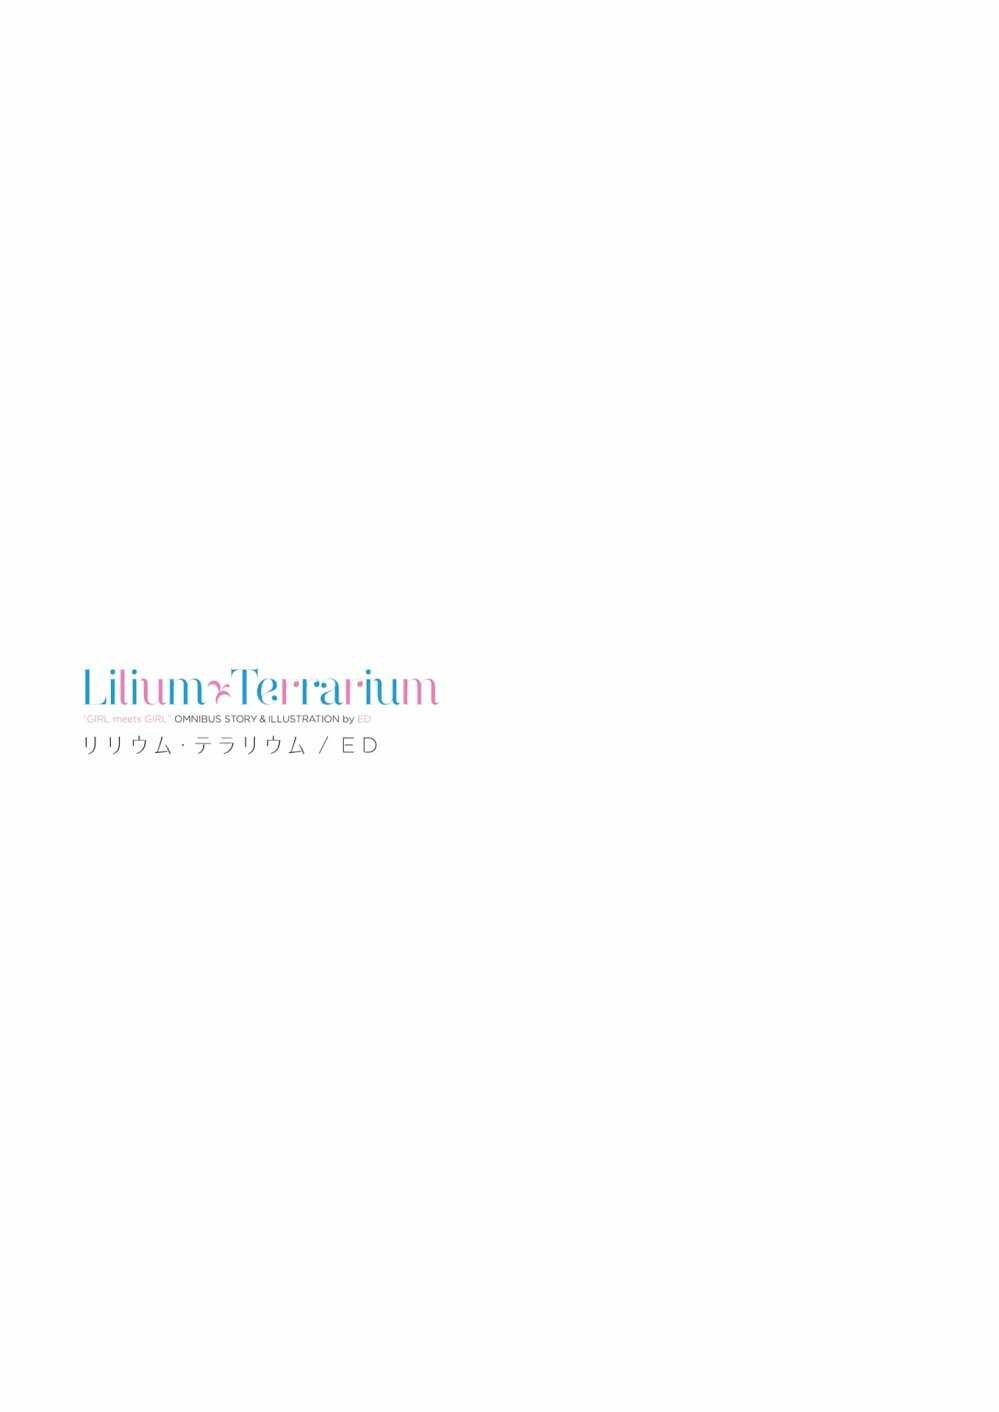 Lilium Terrarium 1 02